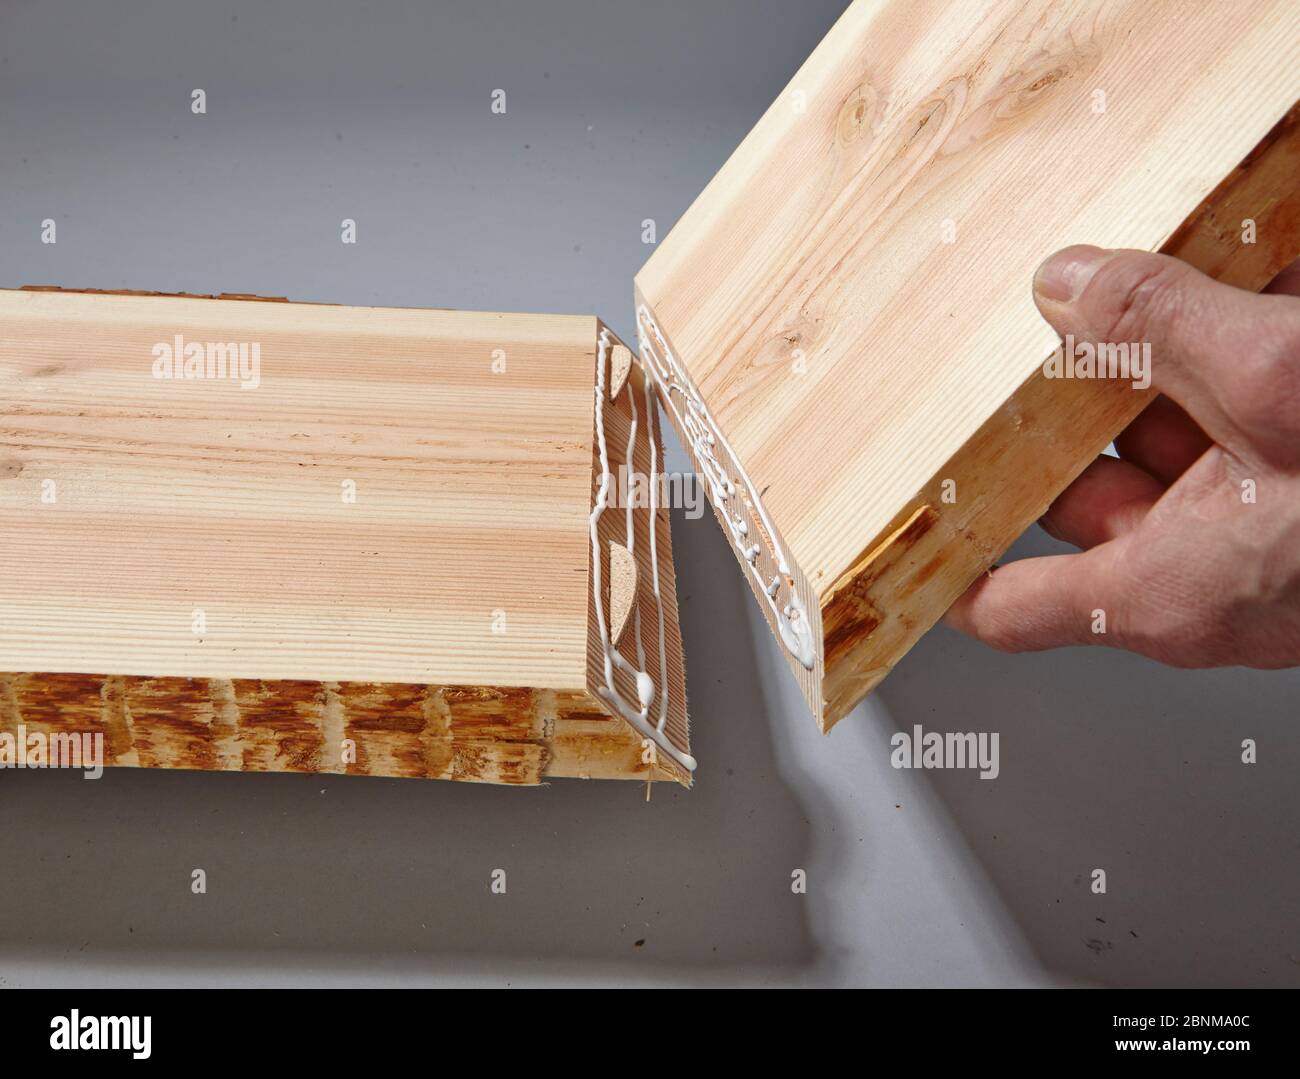 Bau eines Holzregals, Do-it-yourself-Produktion, Schritt für Schritt, Schritt 7 Zusammenführen der beiden zu verleimenden Platten, mit Flachdübeln zur Stabilisierung der Klebung Stockfoto